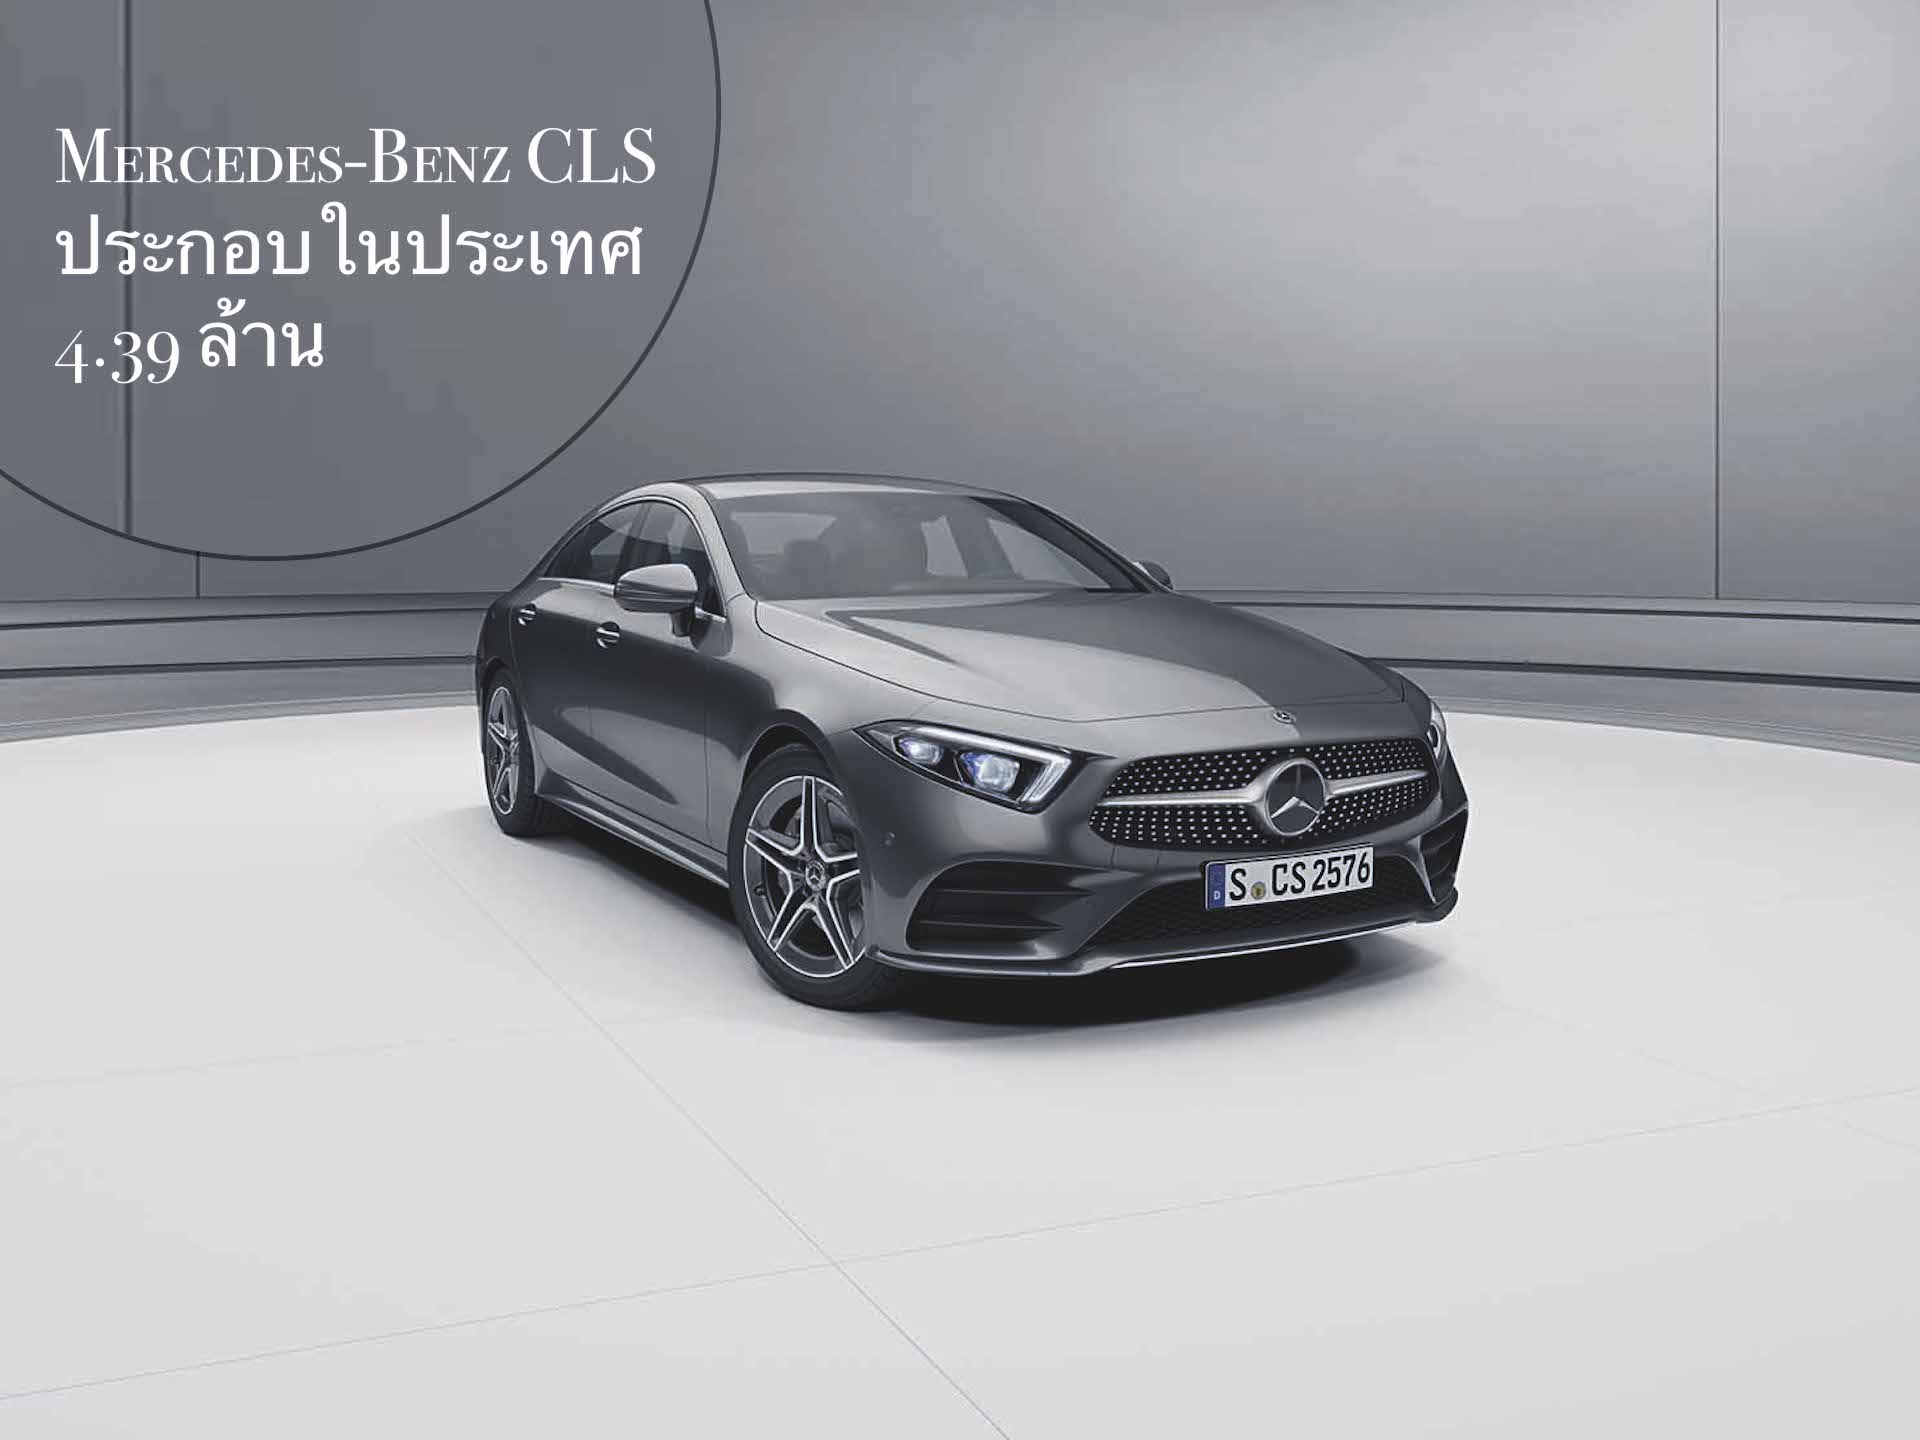 เมอร์เซเดส-เบนซ์  เปิดตัวยนตรกรรมสปอร์ตหรู    Mercedes-Benz CLS รุ่นประกอบในประเทศ